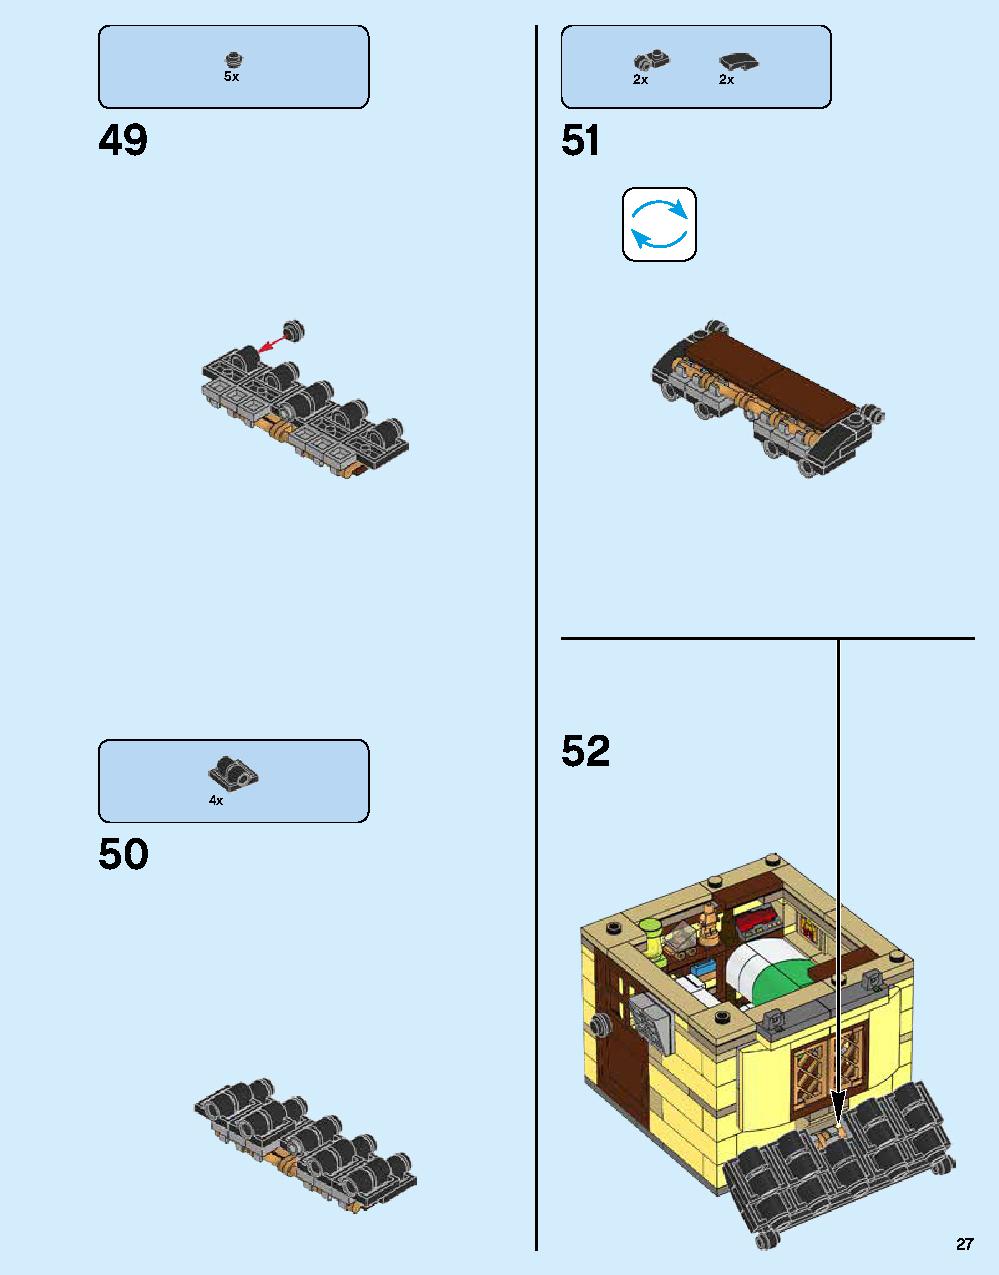 ニンジャゴー シティ 70620 レゴの商品情報 レゴの説明書・組立方法 27 page